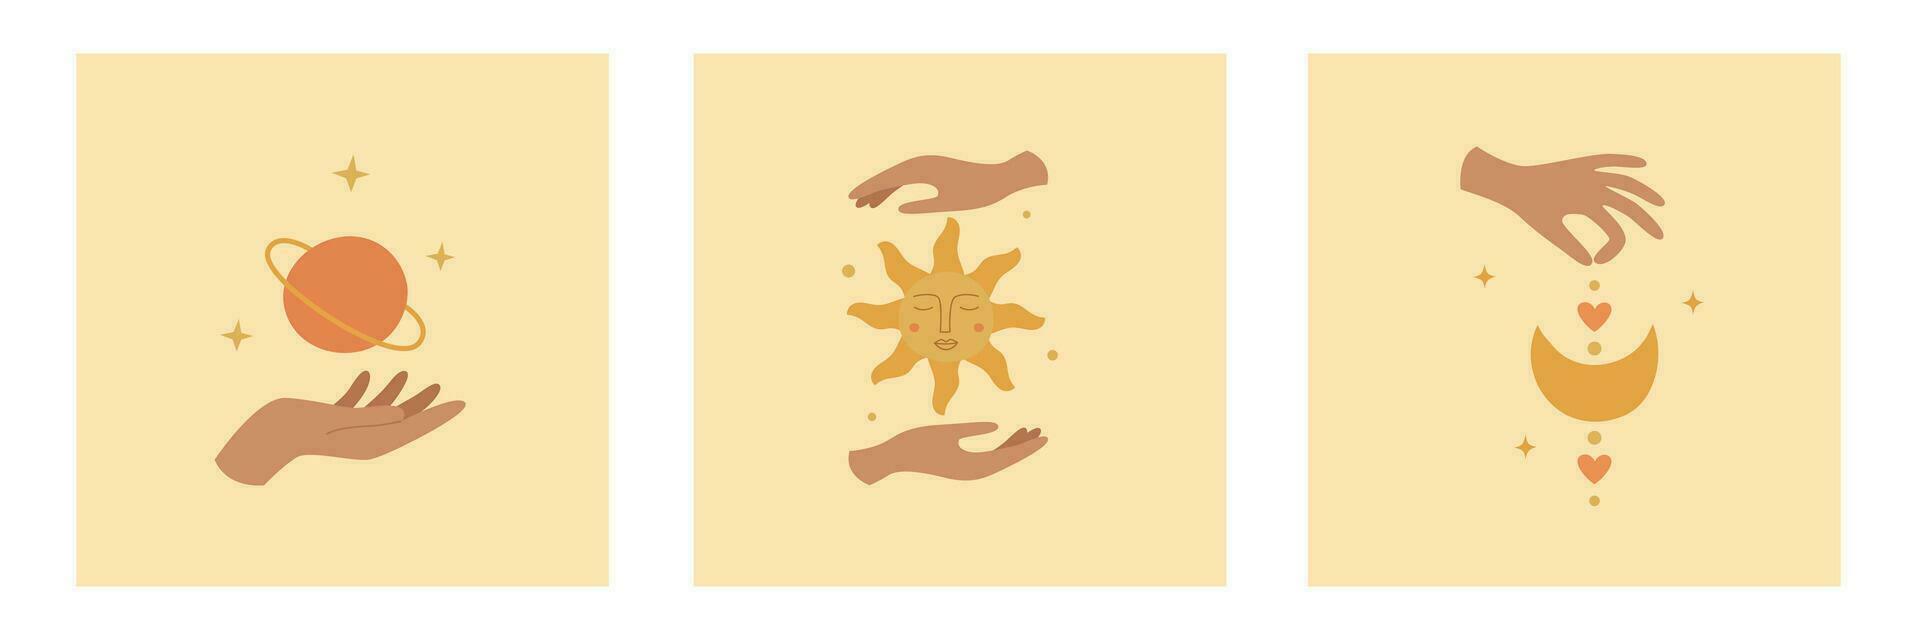 uppsättning av mystisk logotyper med kvinna händer, Sol, planet och måne. mall för boho design, astrologi, horoskop vektor